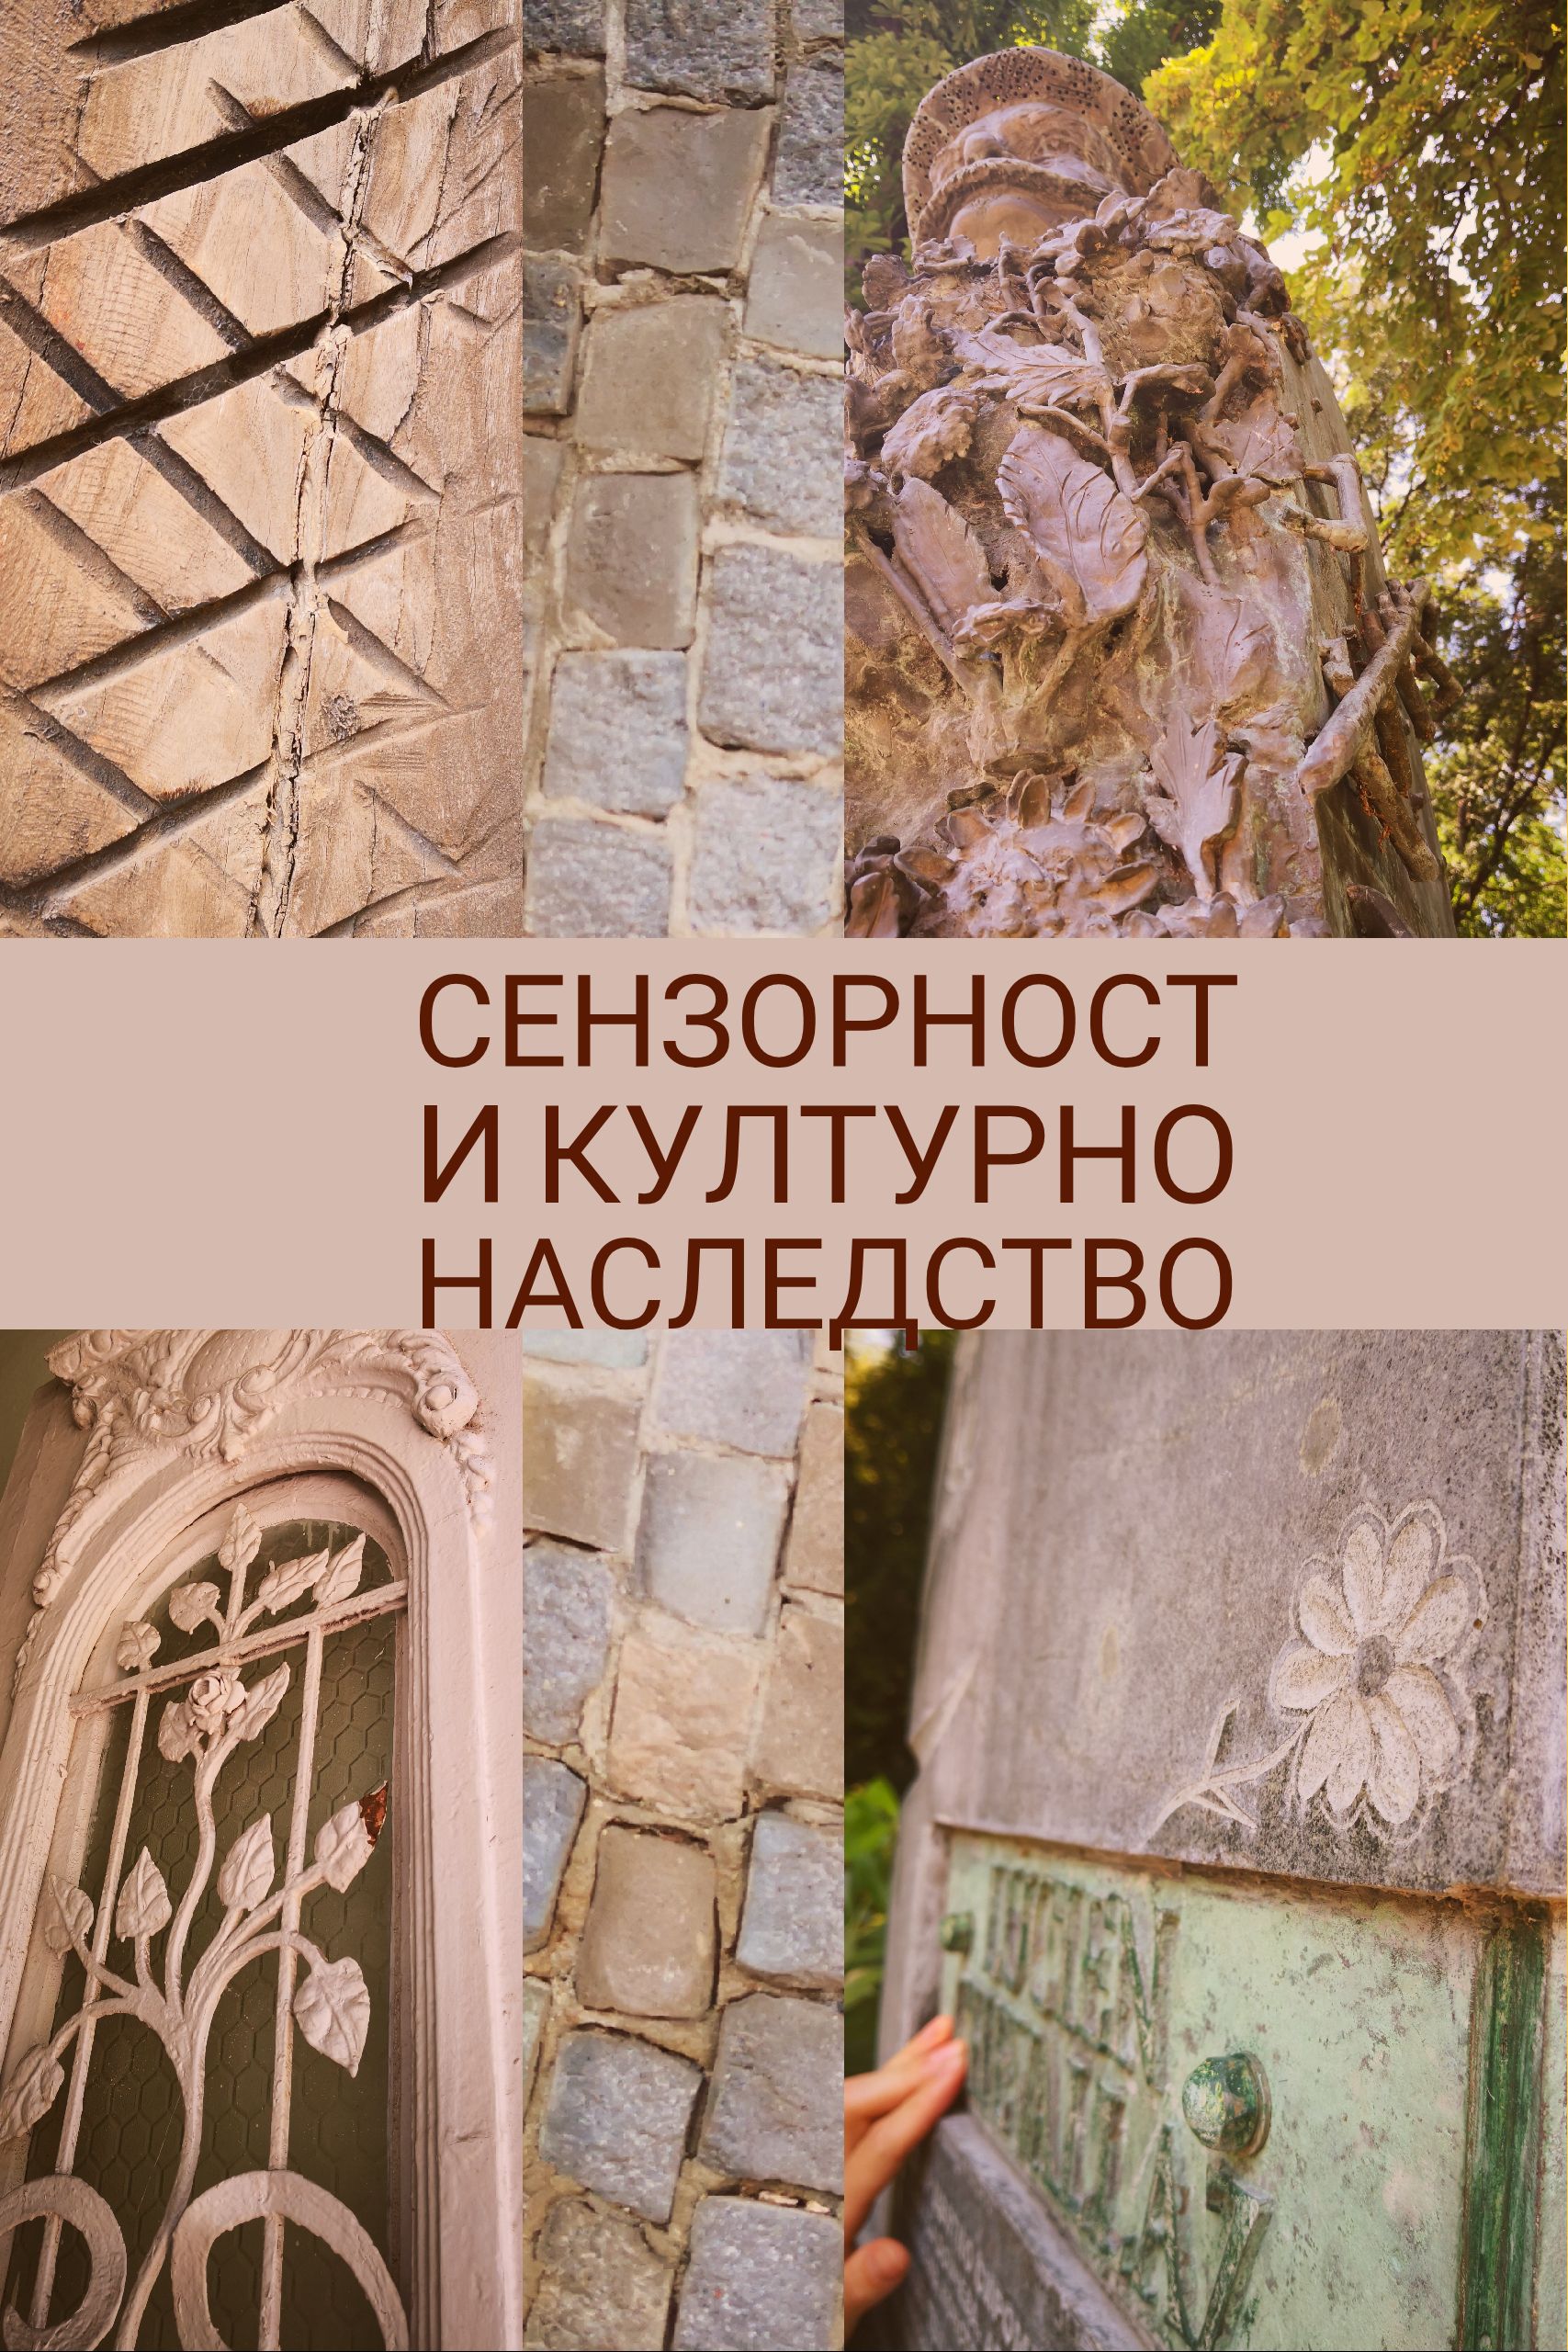 Проект проучва и представя част от културно наследство на Пловдив чрез сензорна етнография